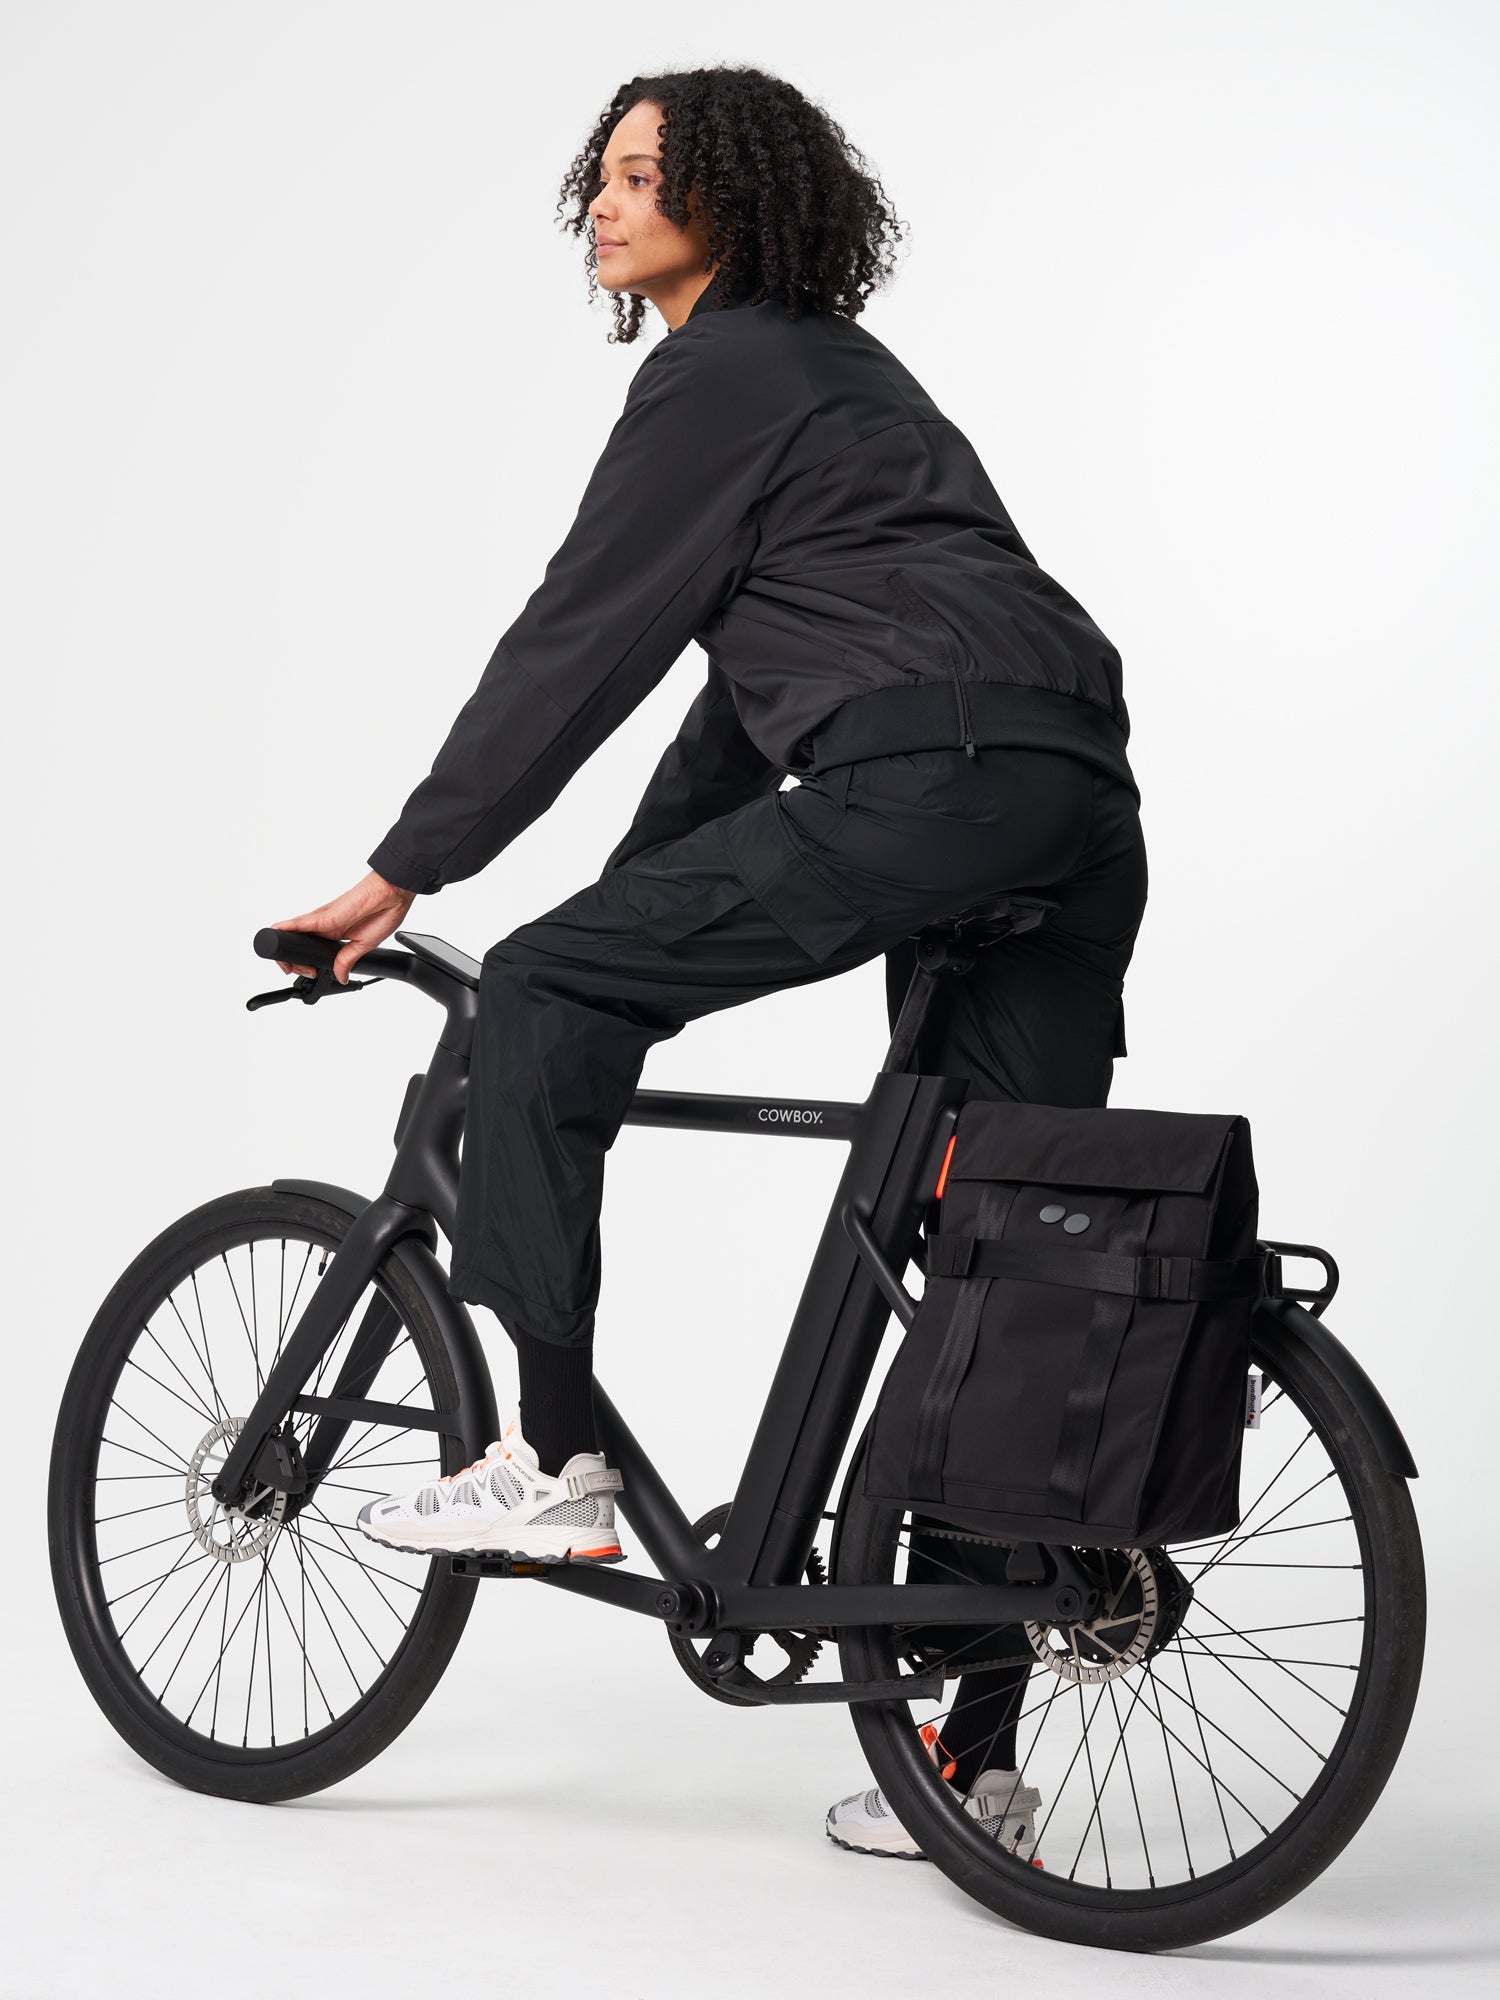 Pendik - nachhaltige 2-in-1 Tasche mit Fahrradträger ✓ – pinqponq